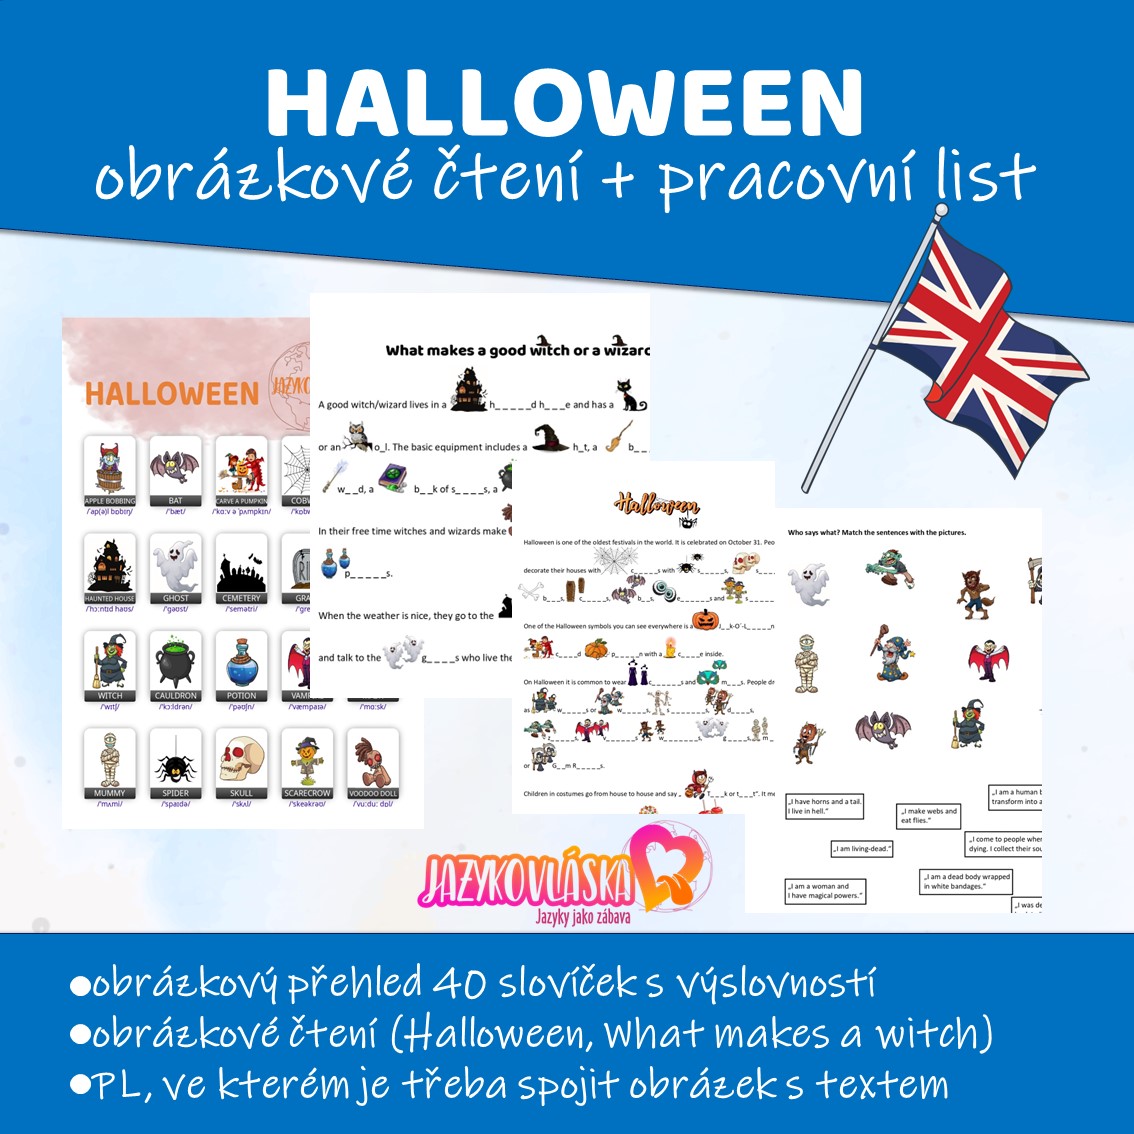 Halloween obrázkové čtení a pracovní list | Jazykovlaska.cz